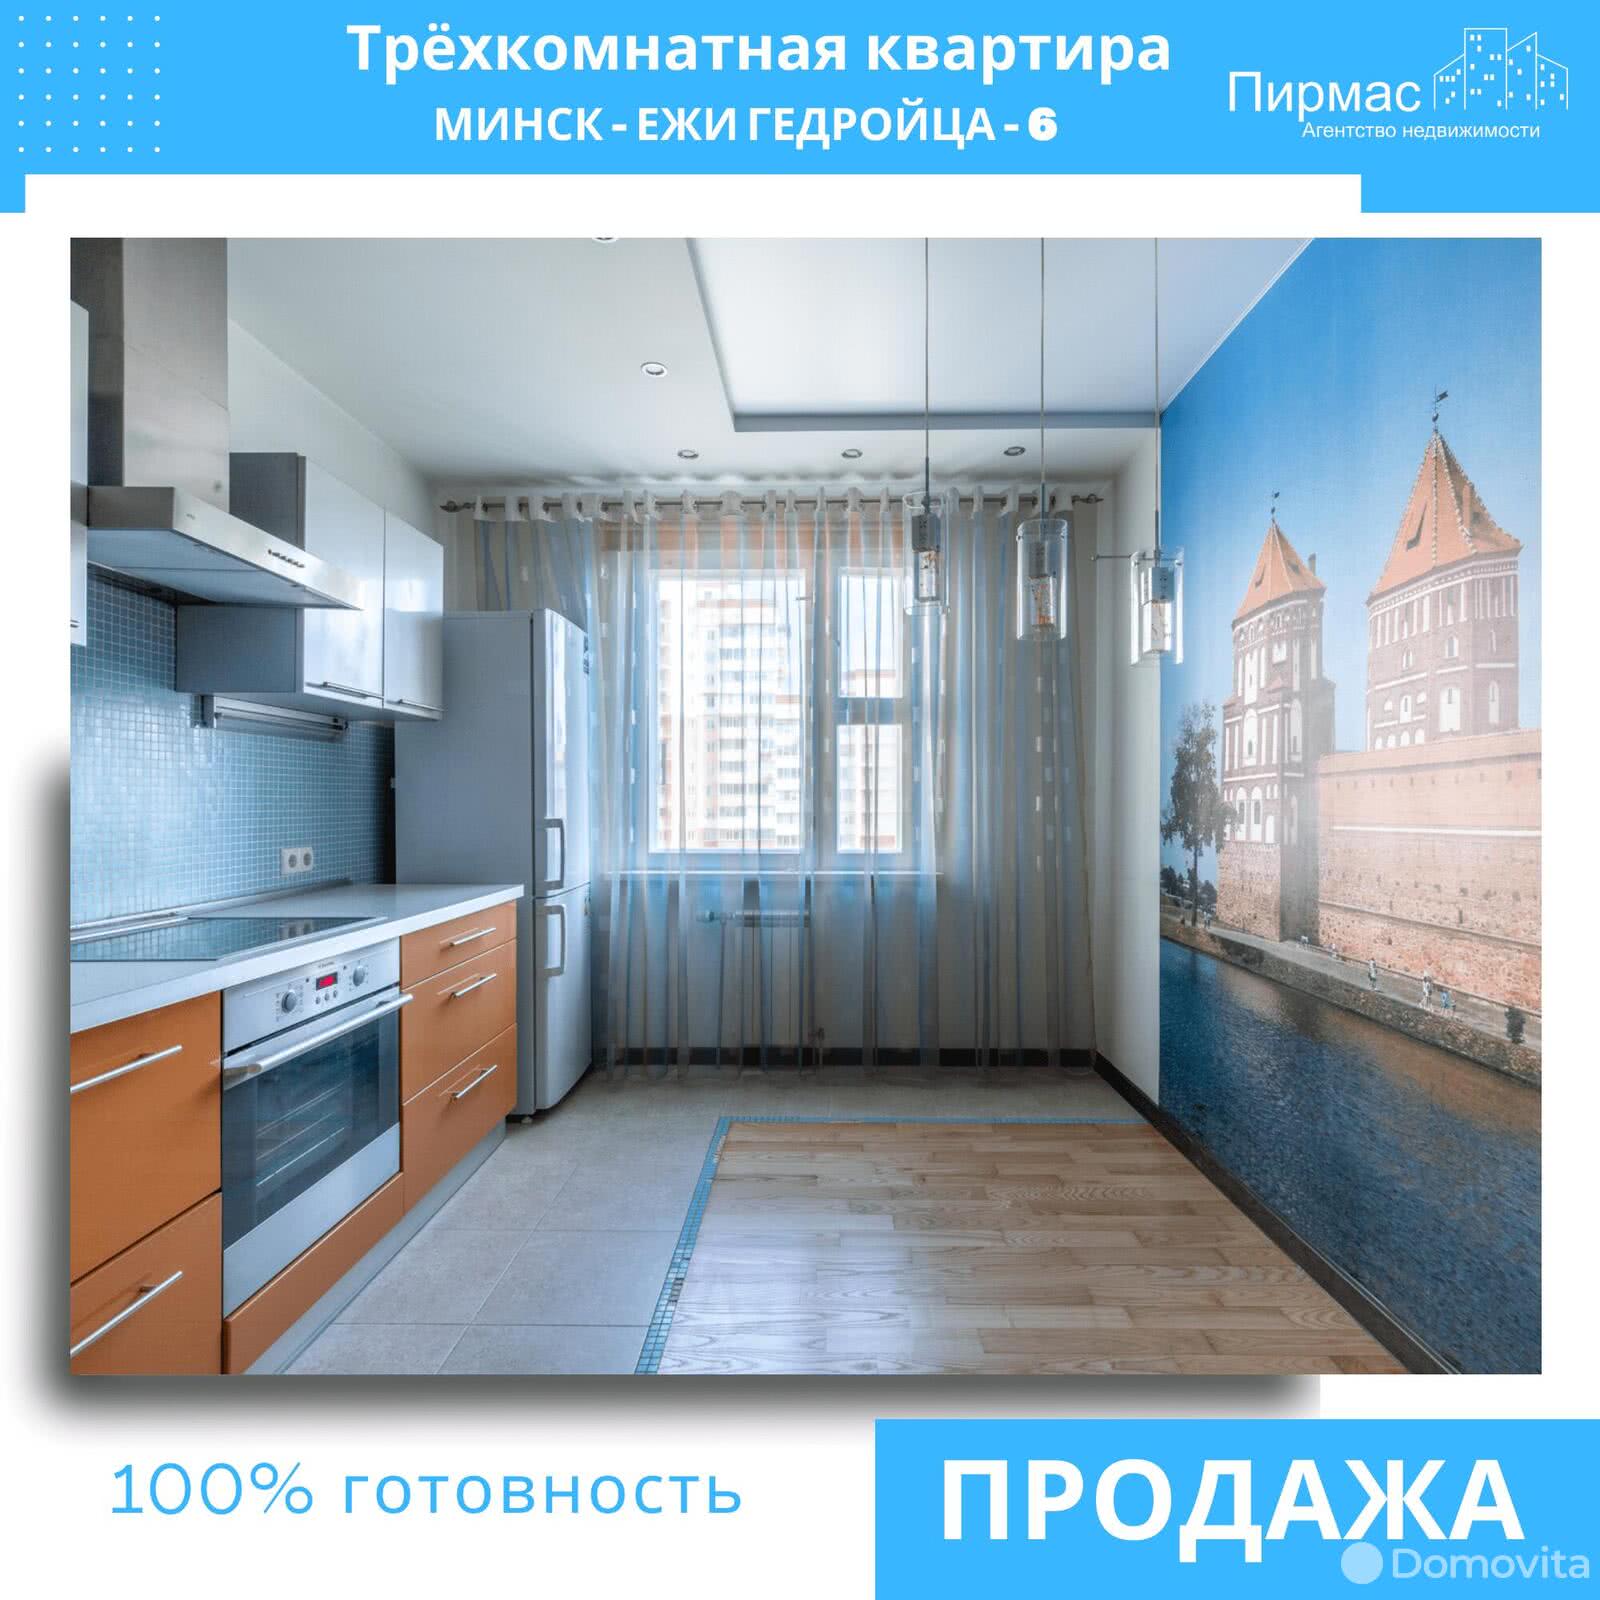 Продажа 3-комнатной квартиры в Минске, ул. Ежи Гедройца, д. 6, 132000 USD, код: 1006153 - фото 3